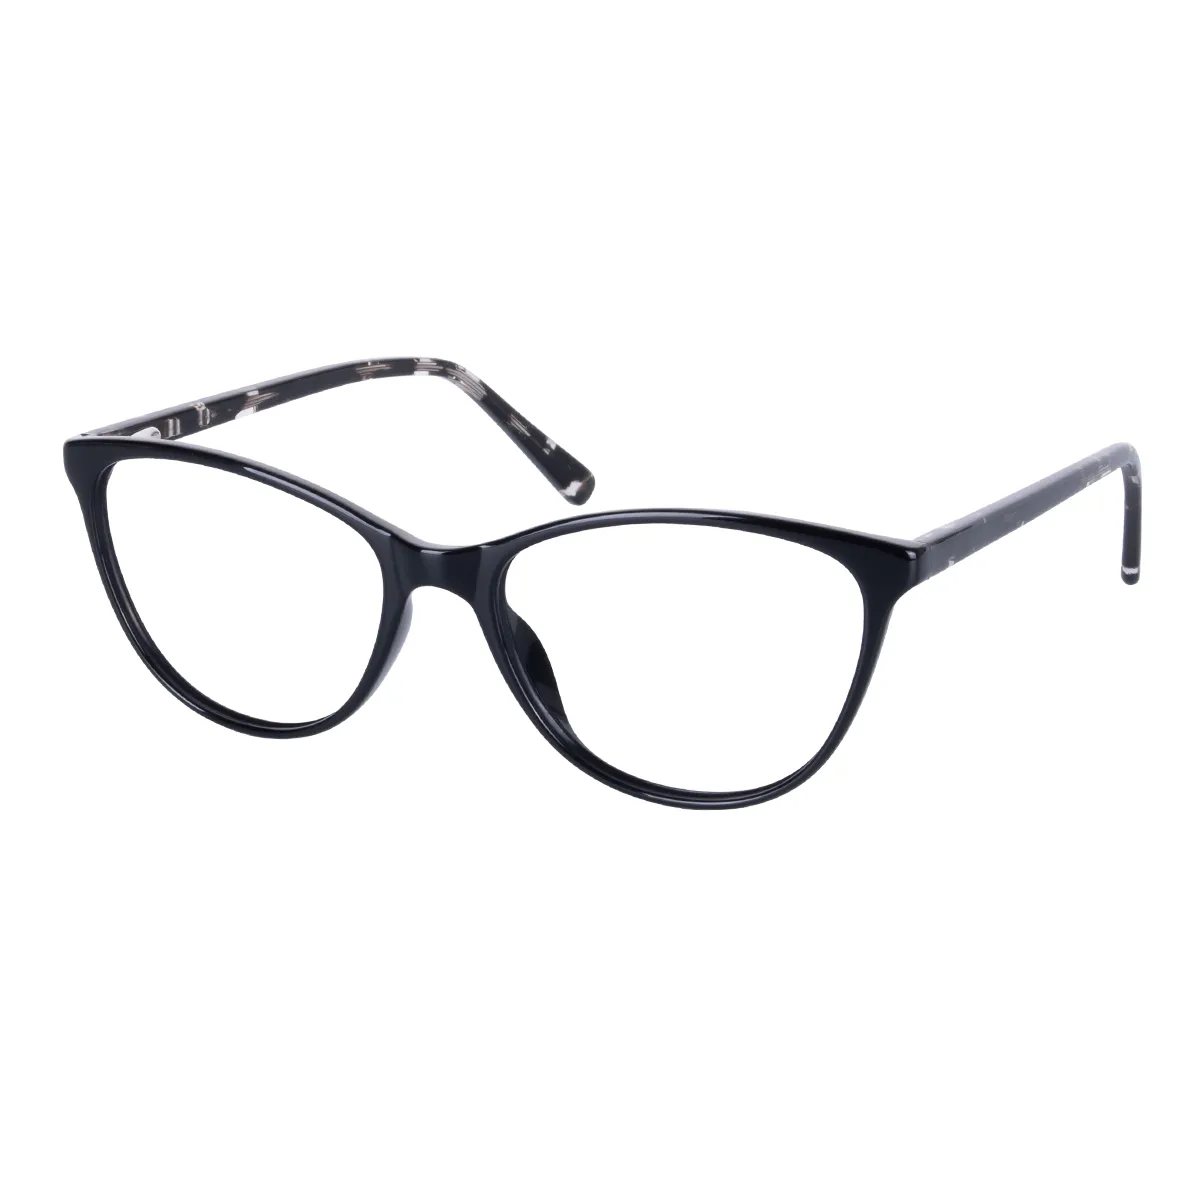 Luma - Oval Black Glasses for Women